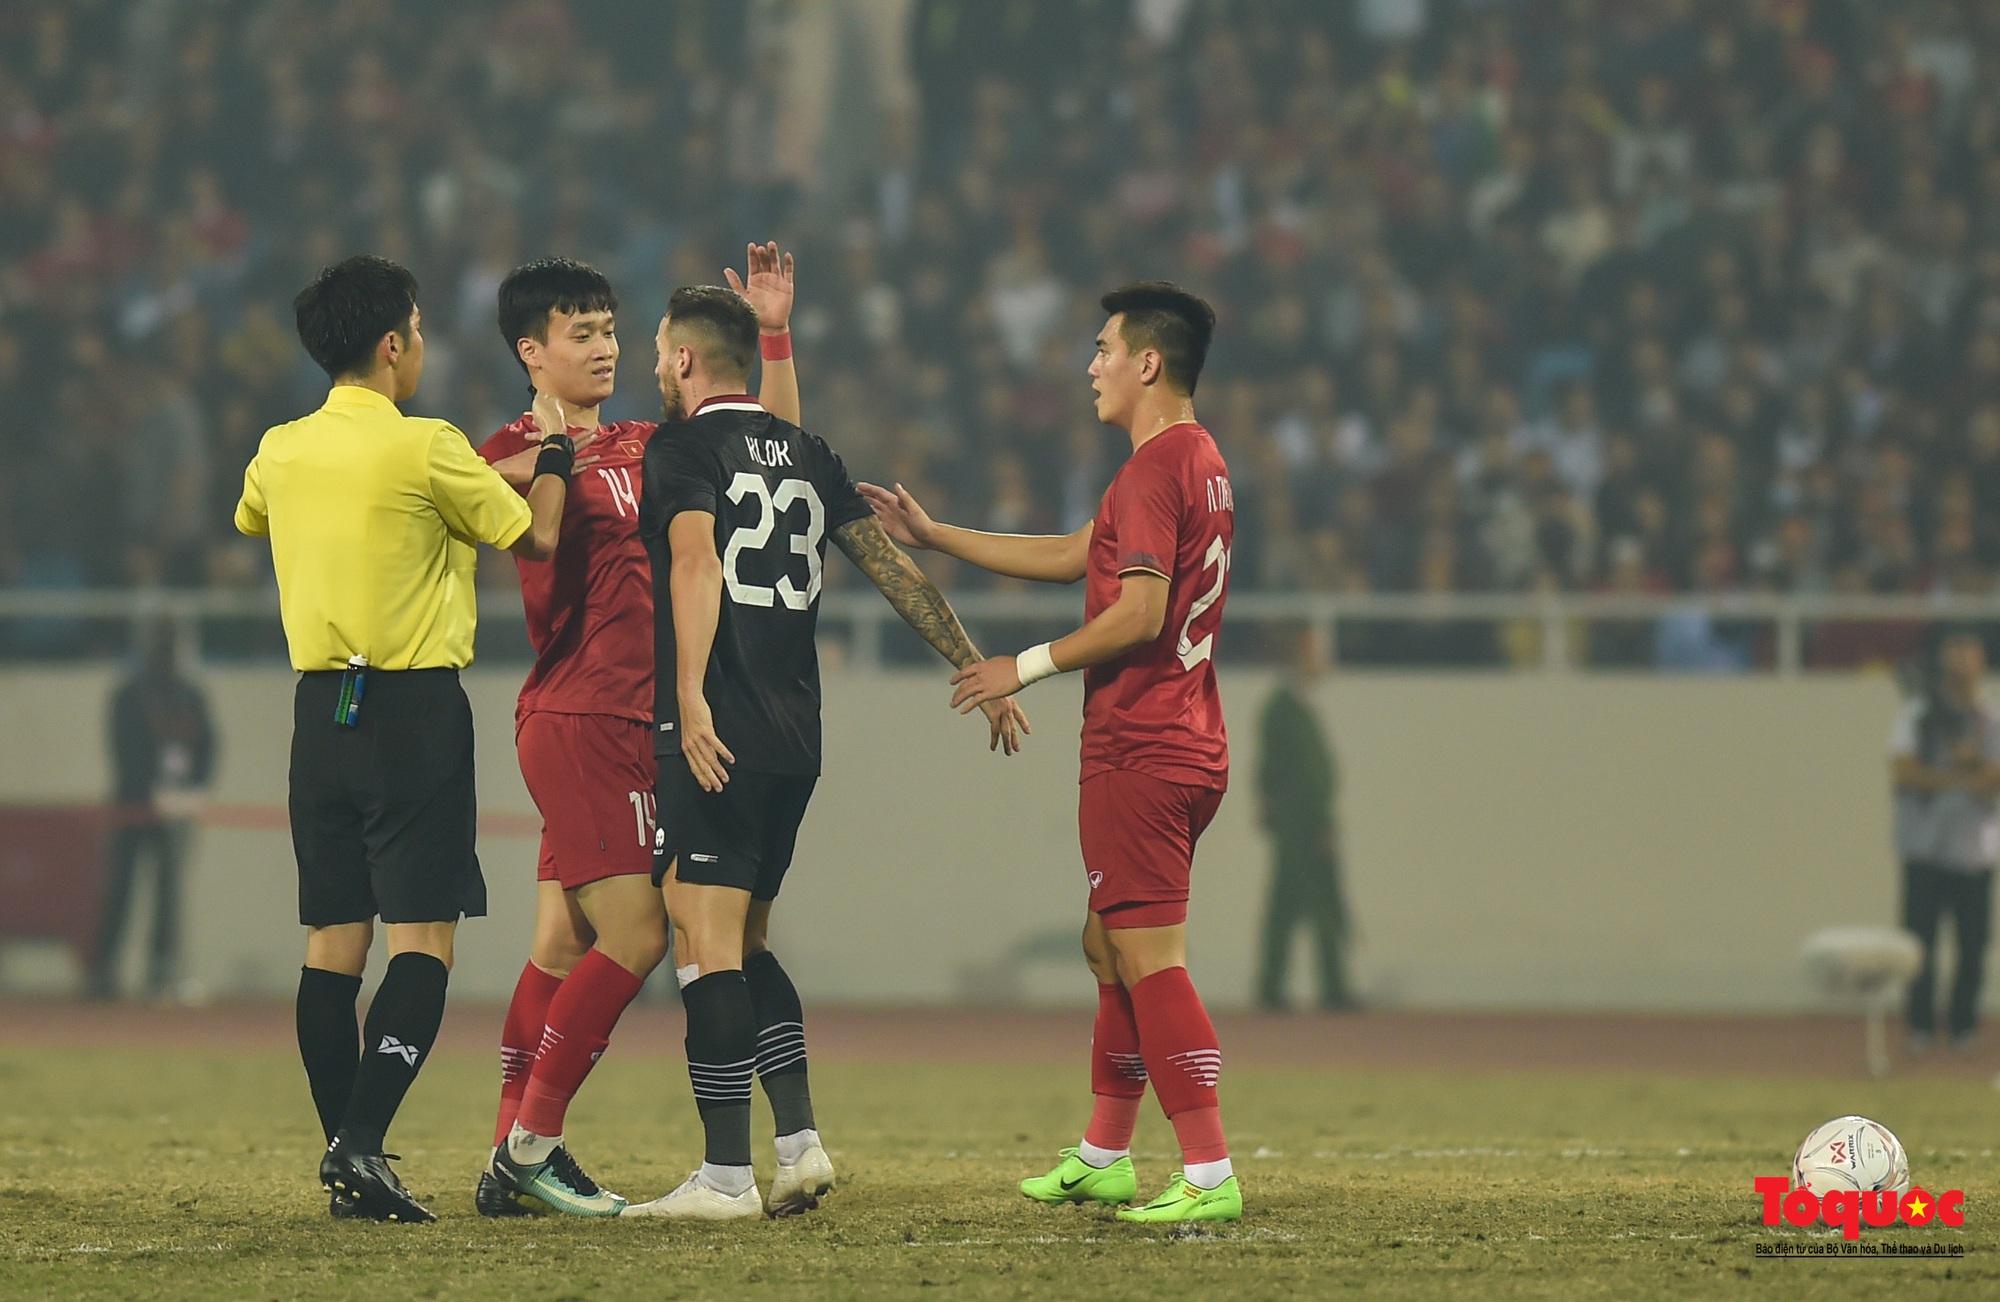 Chùm ảnh Bán kết AFF Cup 2022: Niềm vui chiến thắng của cầu thủ, cổ động viên Việt Nam trên sân Mỹ Đình - Ảnh 9.